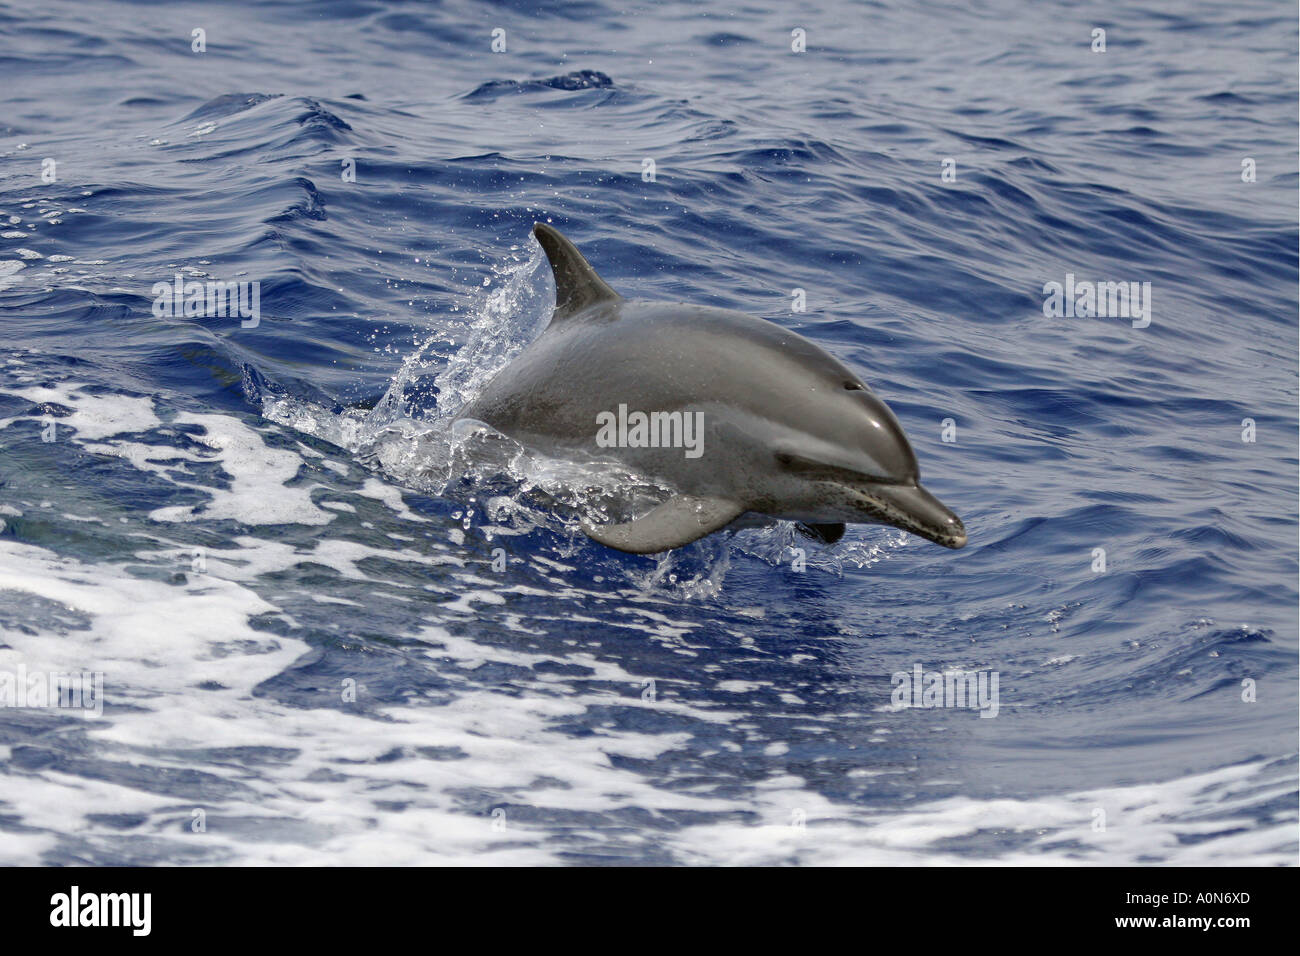 Pacific spotted dolphin, Stenella attenuata, Hawaii. Stock Photo